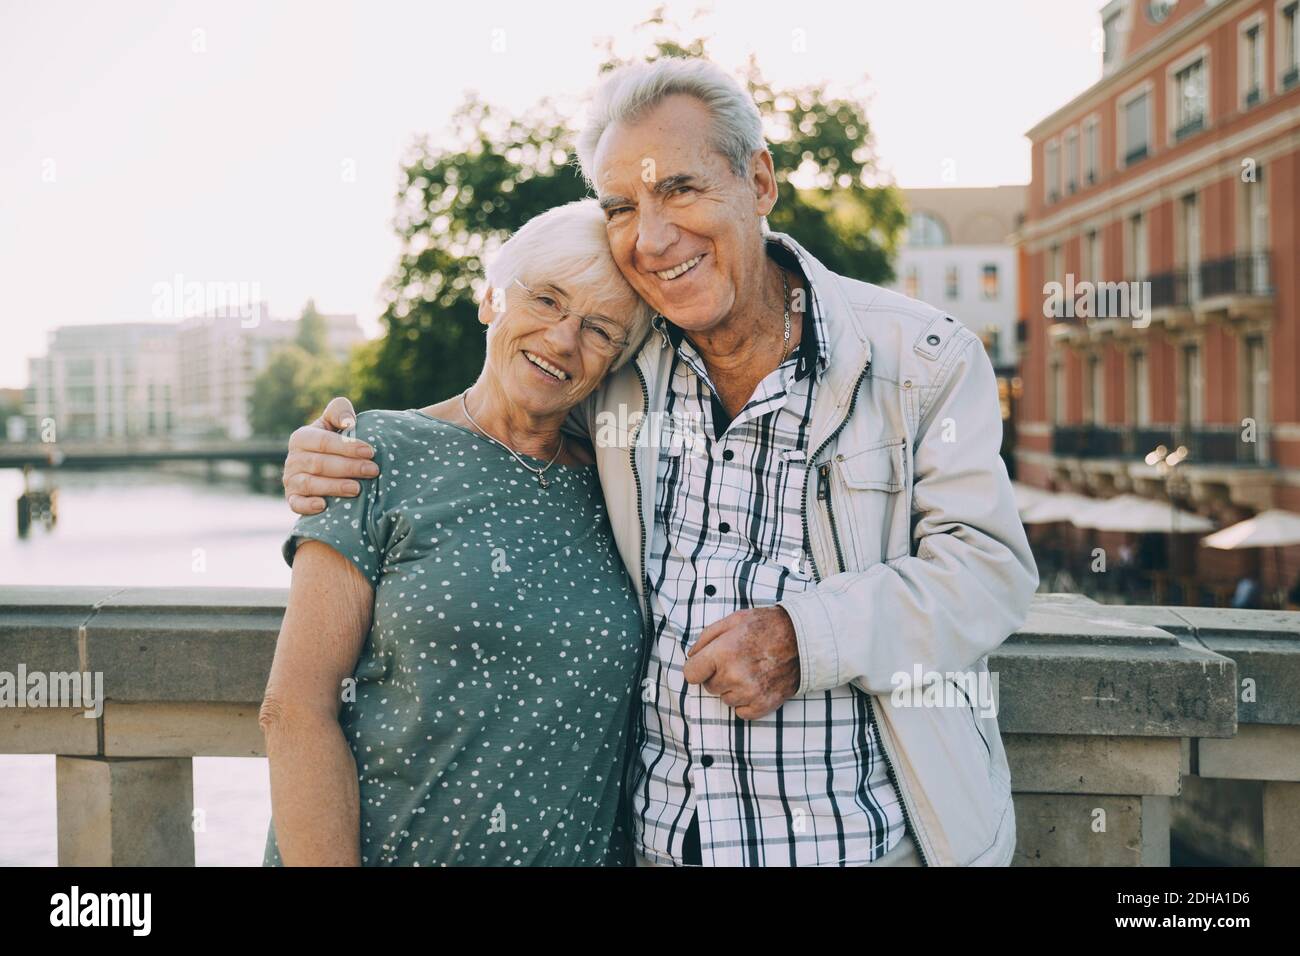 Portrait d'un homme âgé souriant autour du bras, debout avec son partenaire contre la rambarde en ville Banque D'Images